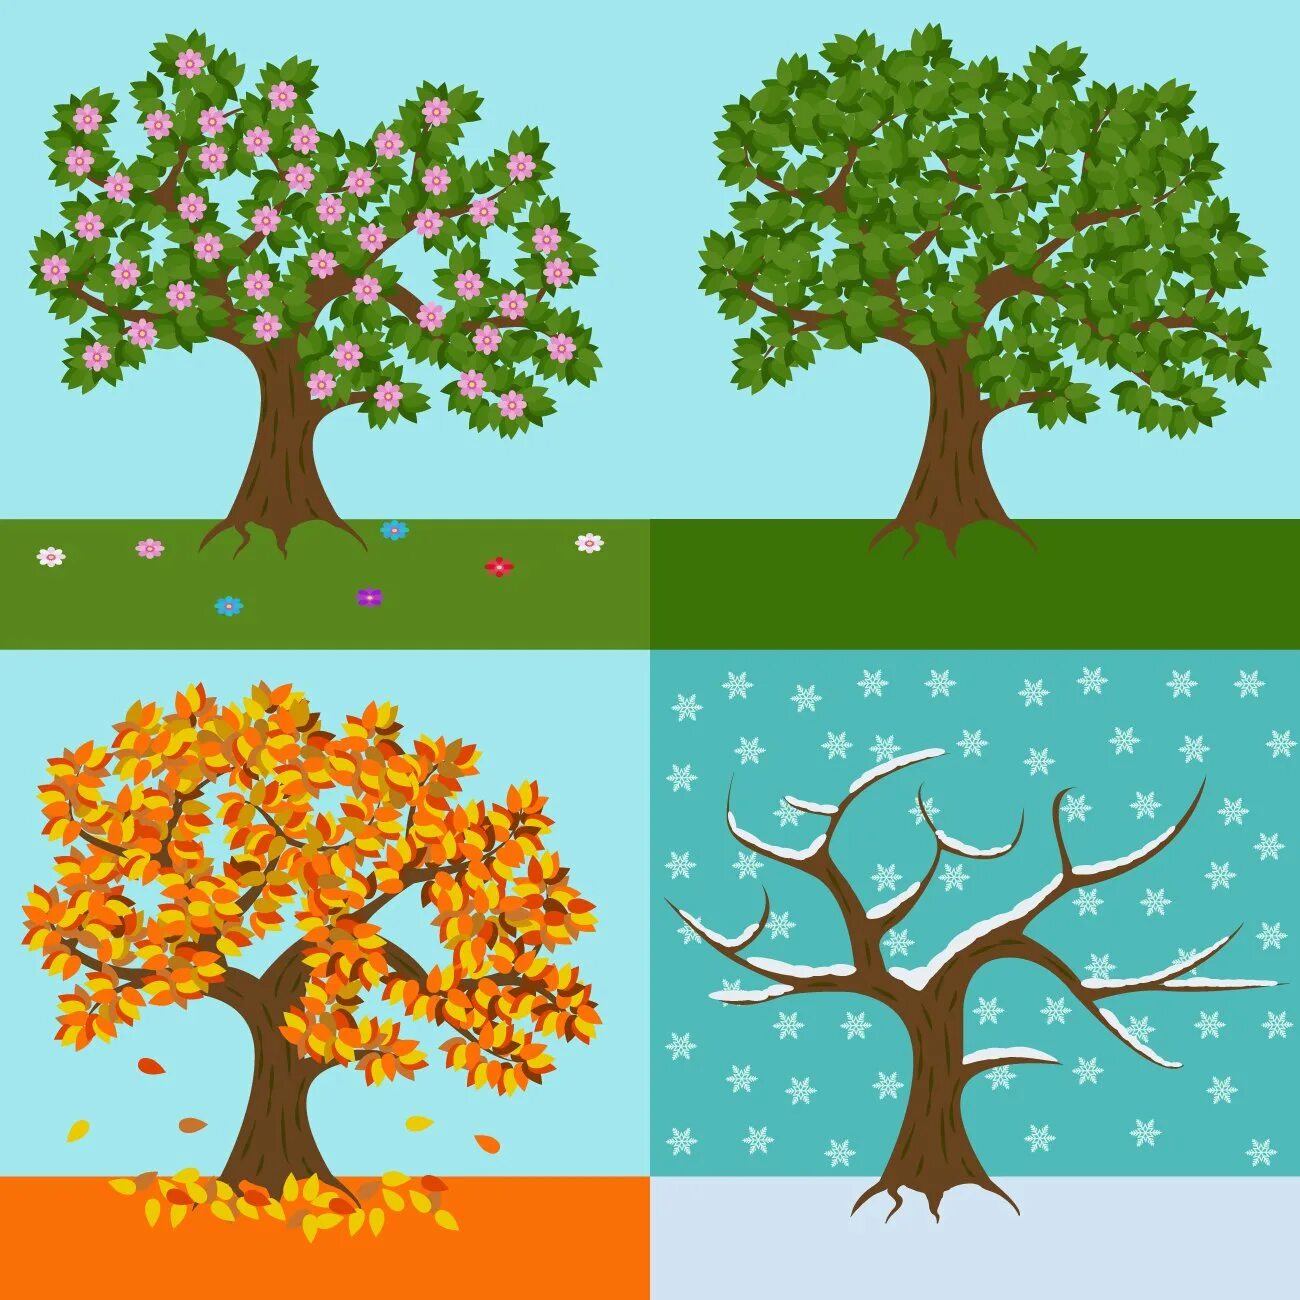 Яблоня в разные времена года. Дерево в разные времена года. Дерево по сезонам. Изображения времен года для детей.